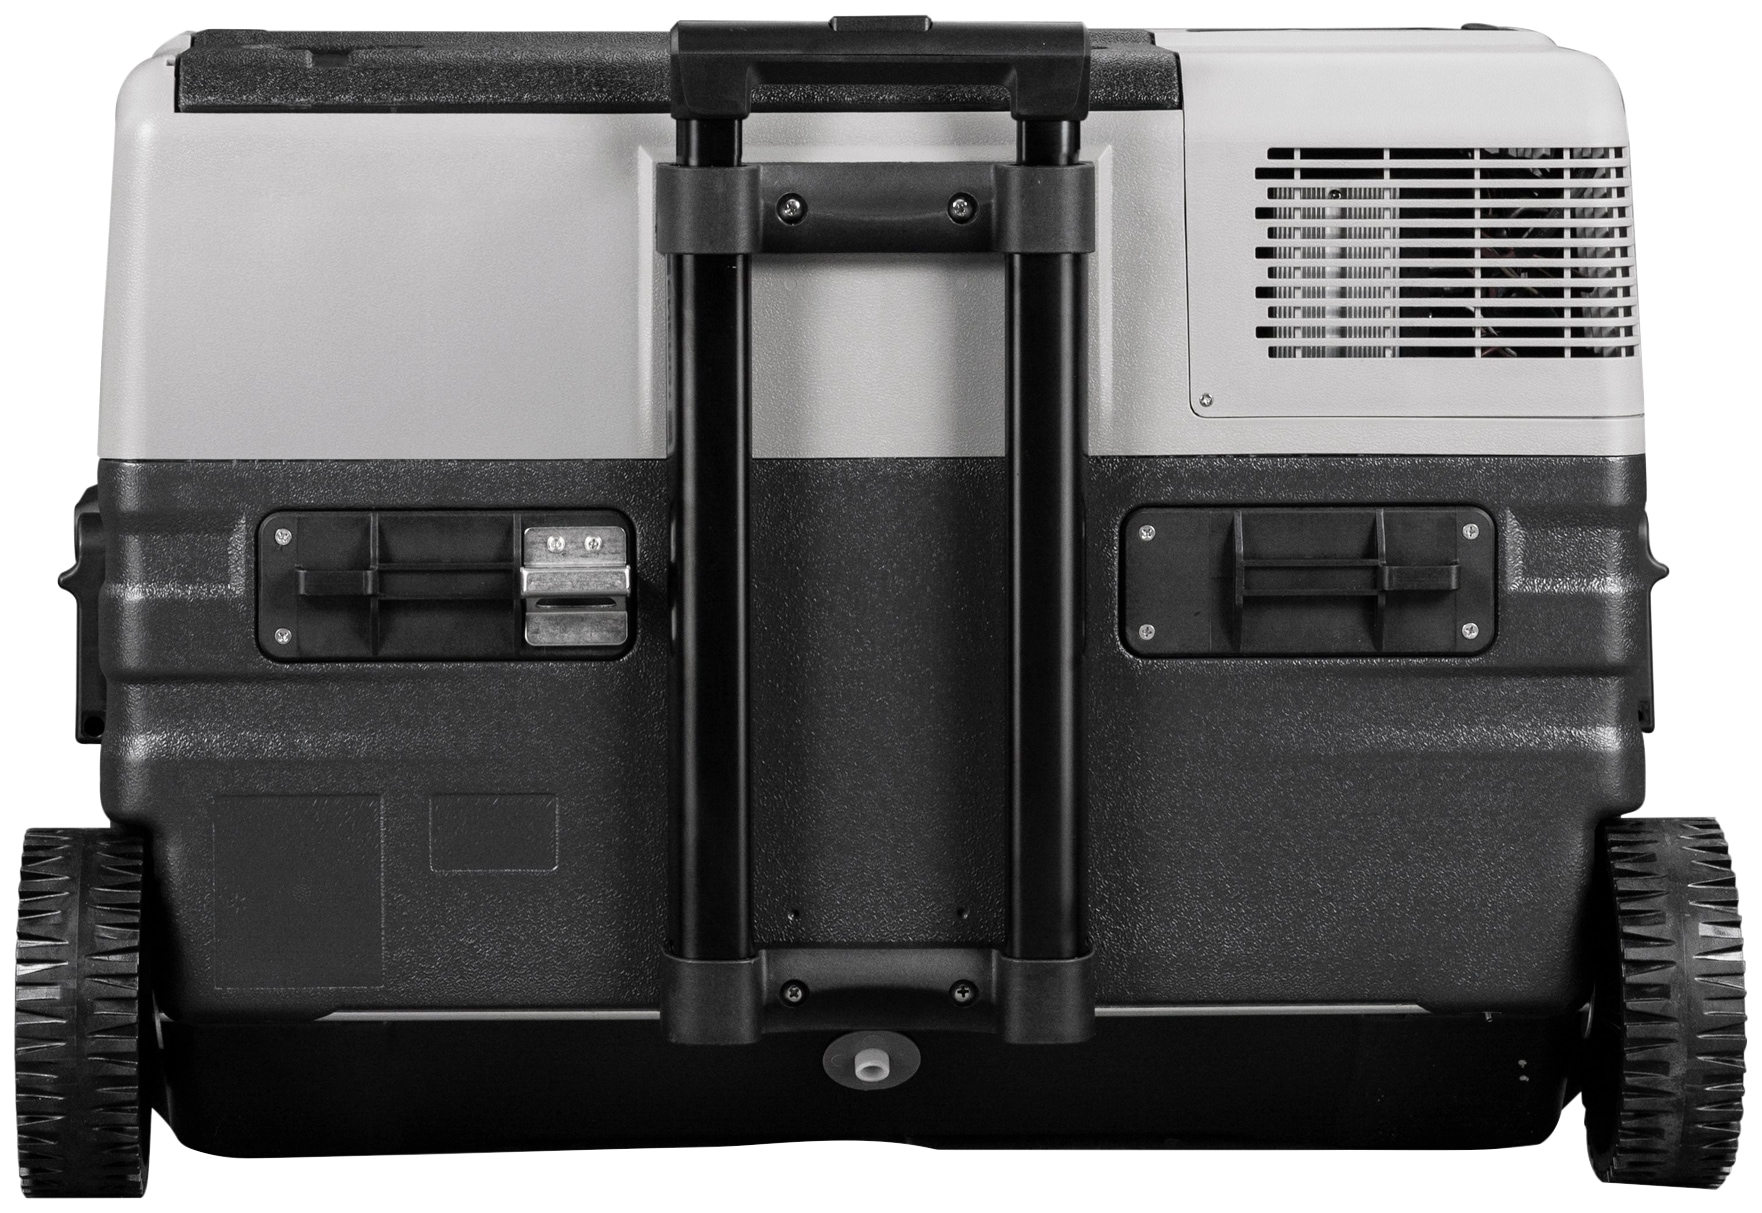 ALPICOOL Elektrische Kühlbox »K18«, 18L Kompressor-Kühlbox, im